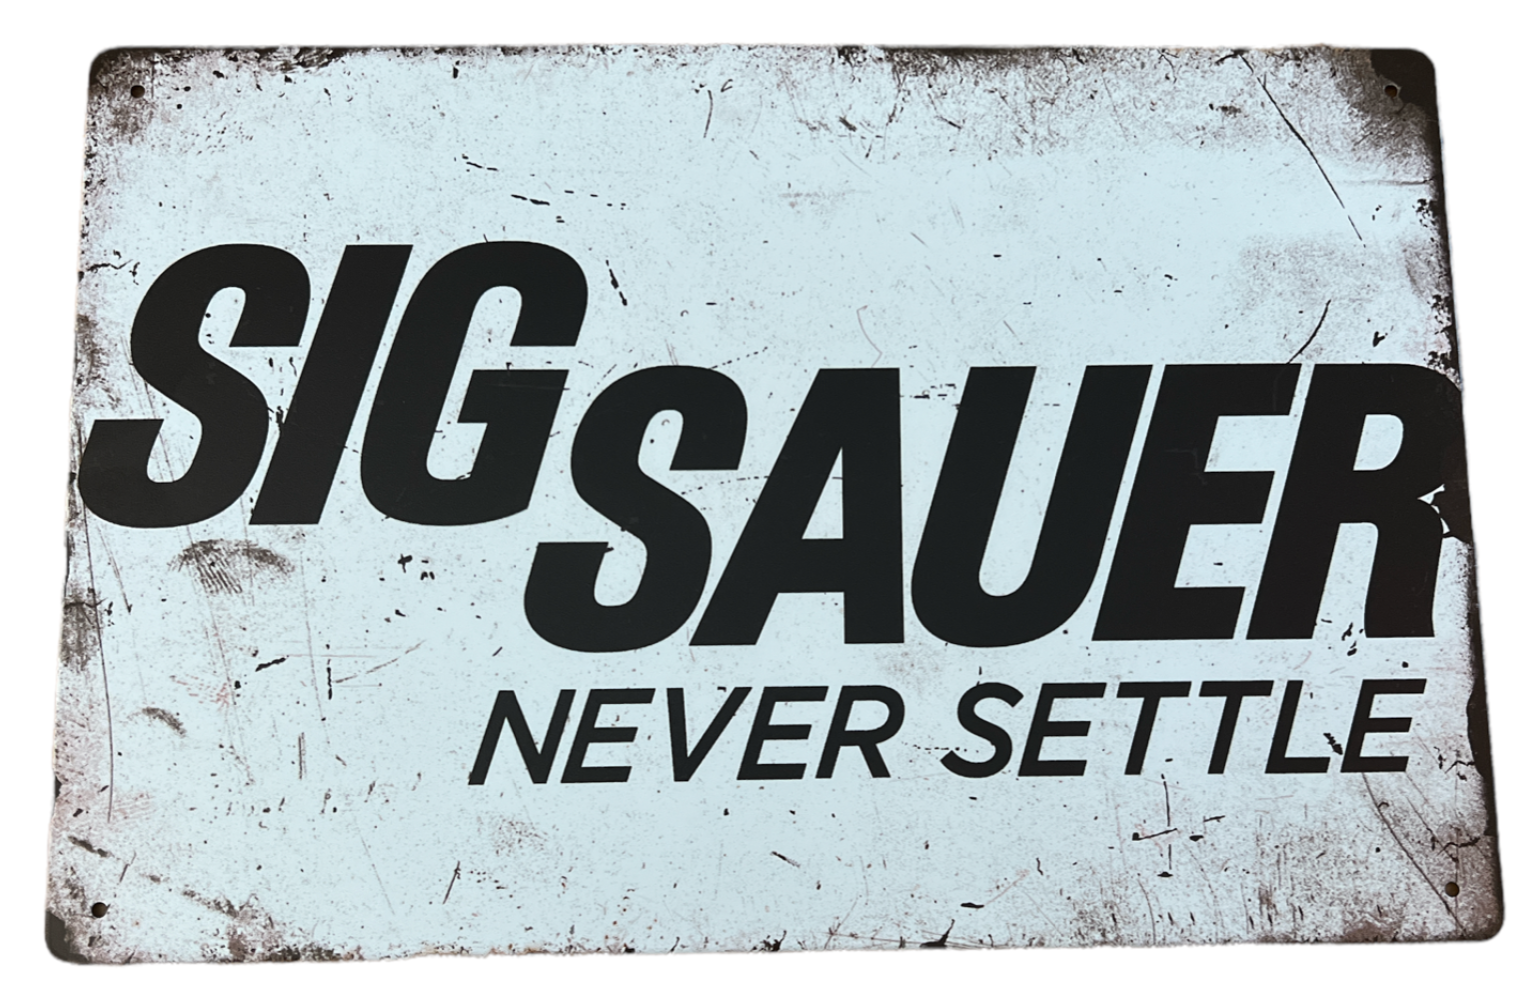 Sig Sauer - Metal tin sign